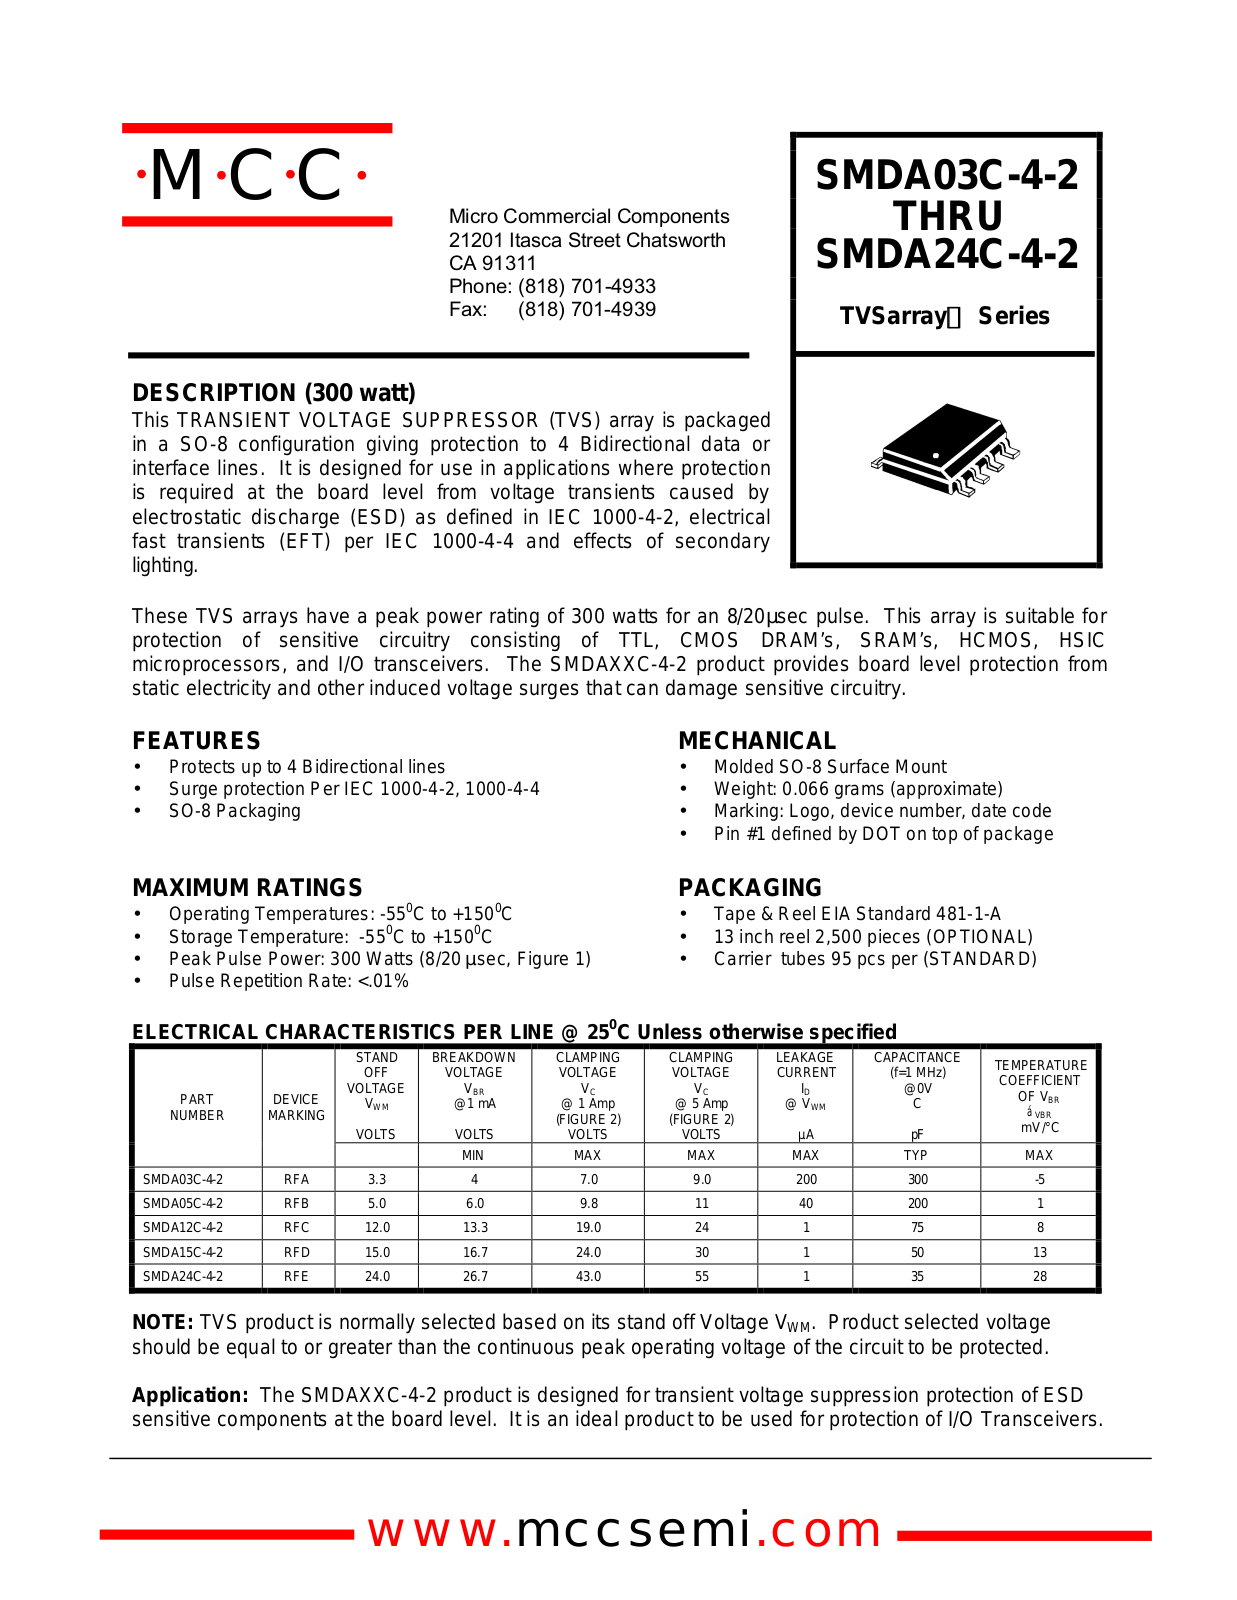 MCC SMDA05C-4-2, SMDA12C-4-2, SMDA24C-4-2, SMDA15C-4-2 Datasheet